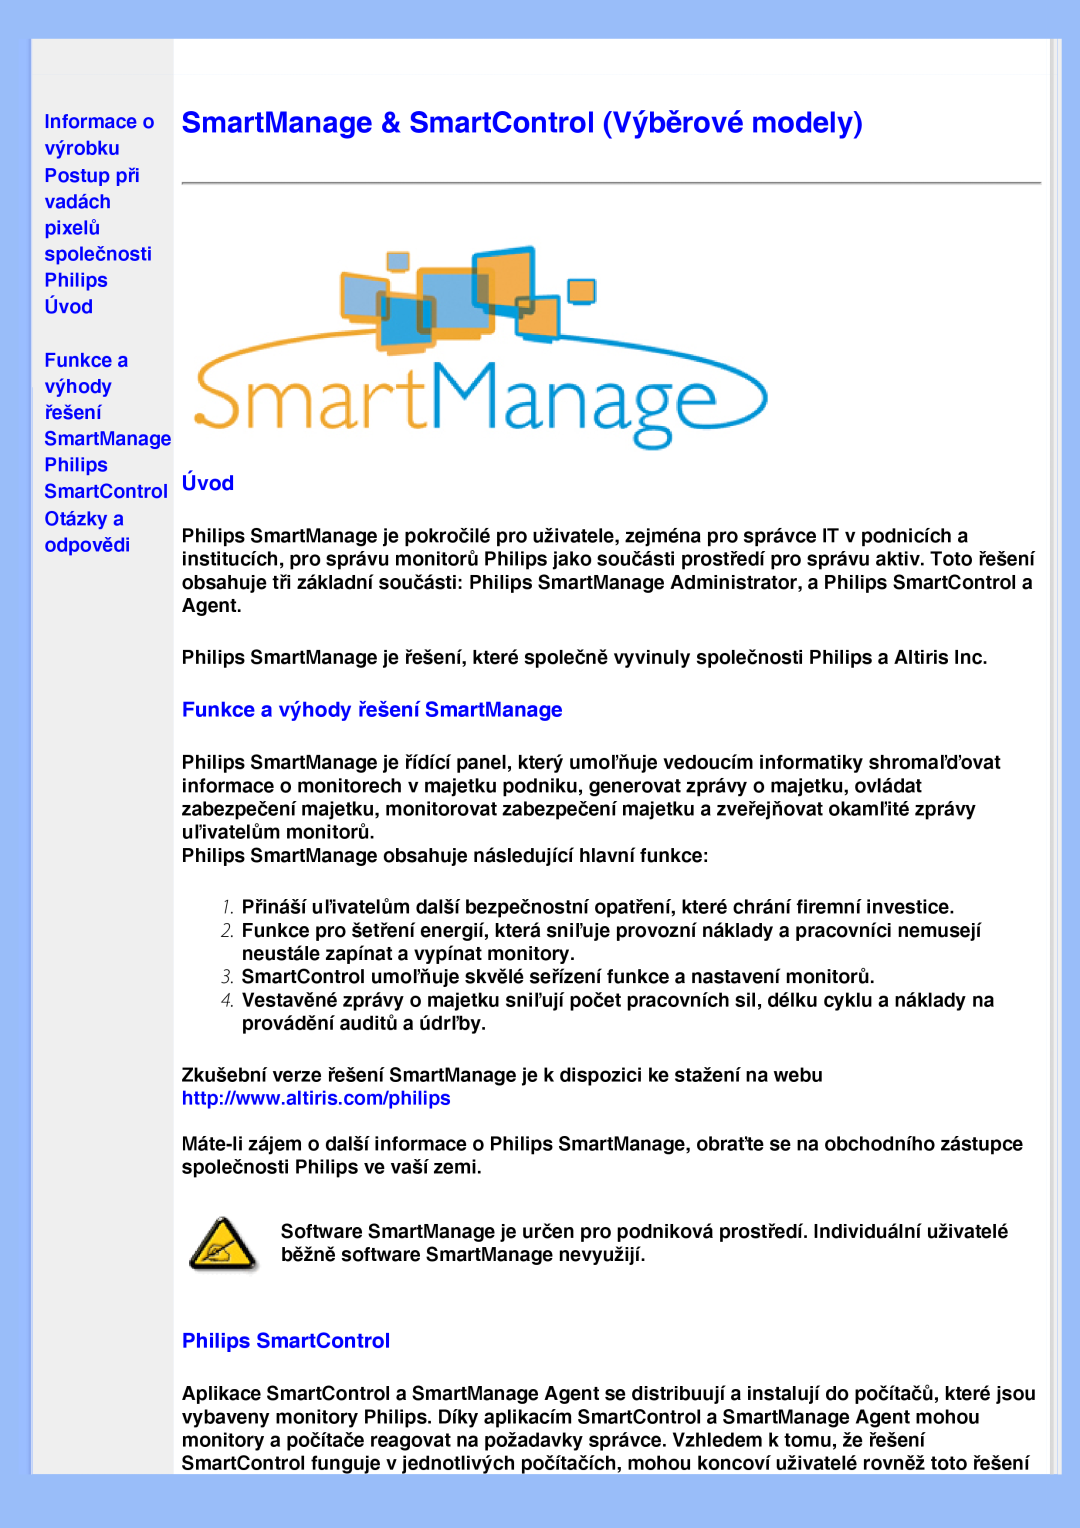 Philips 200VW8 SmartManage & SmartControl Výběrové modely, Úvod, Funkce a výhody řešení SmartManage, Philips SmartControl 